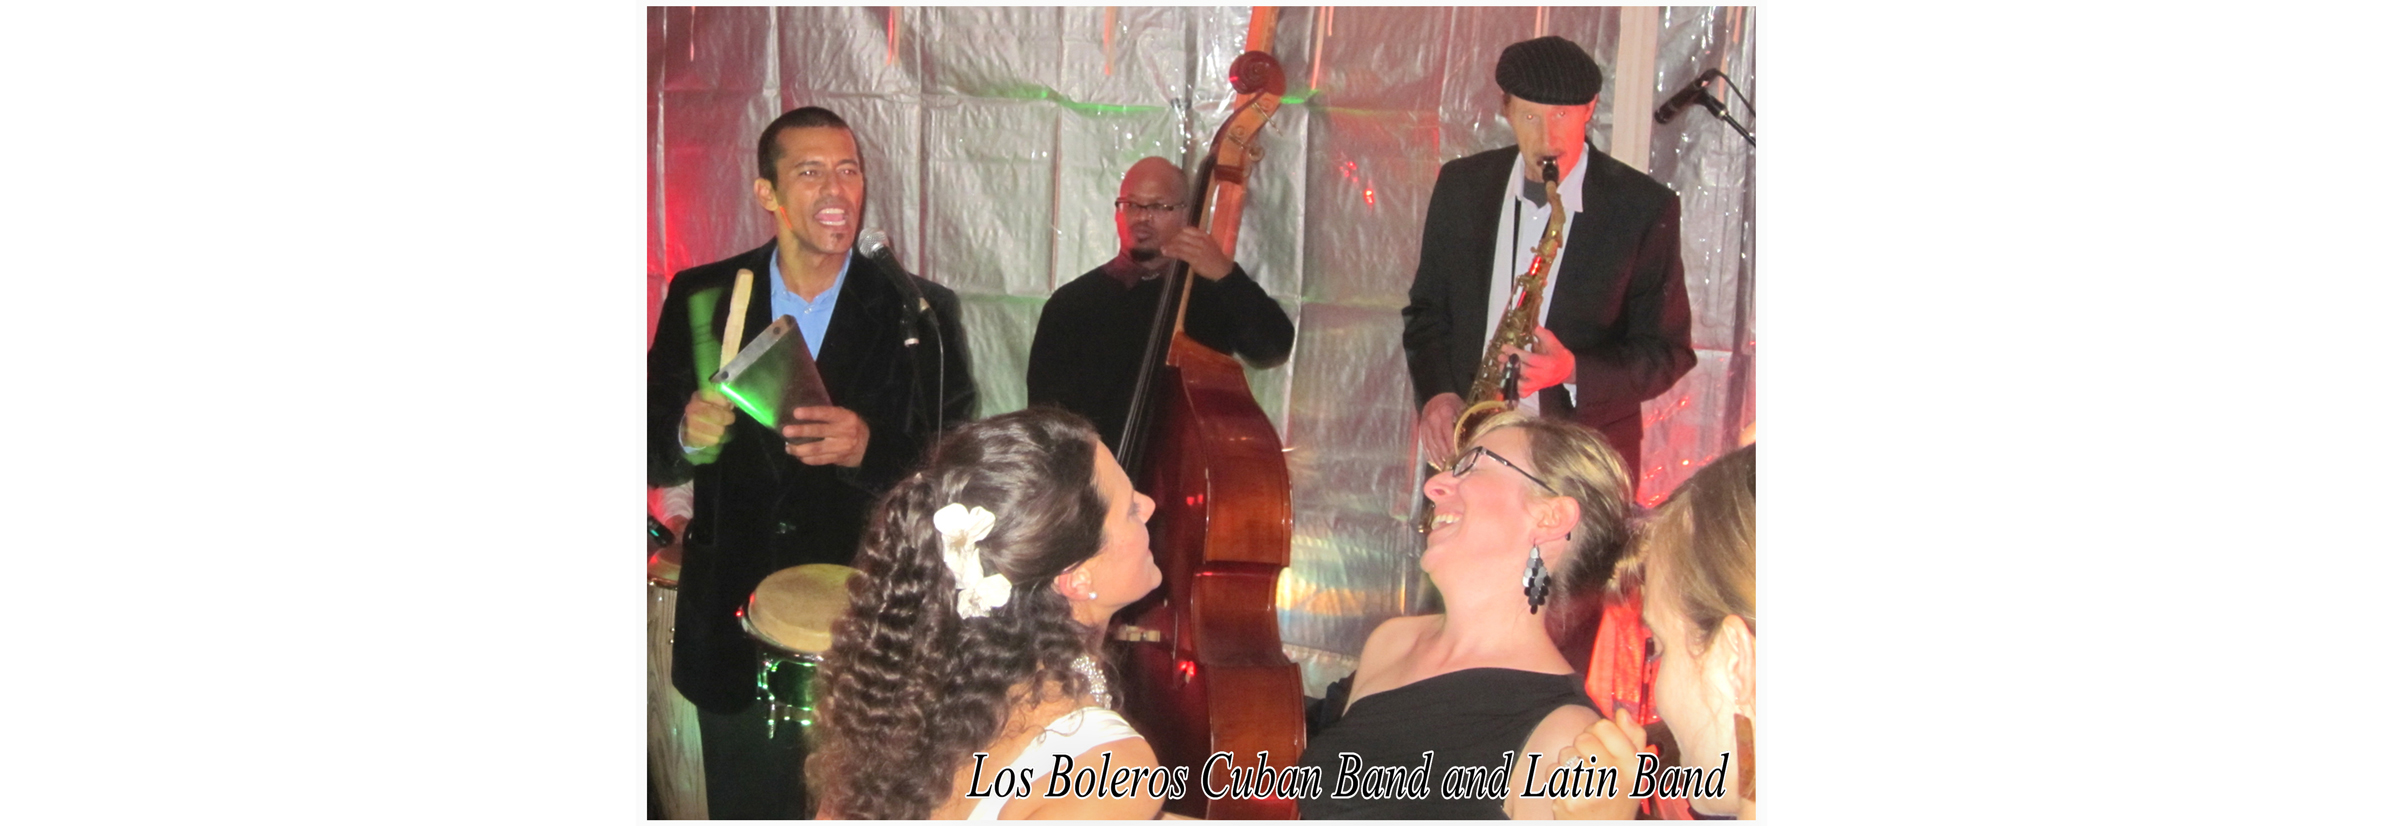 salsa band, cuban music cuban band, Latin music Latin band, salsa music